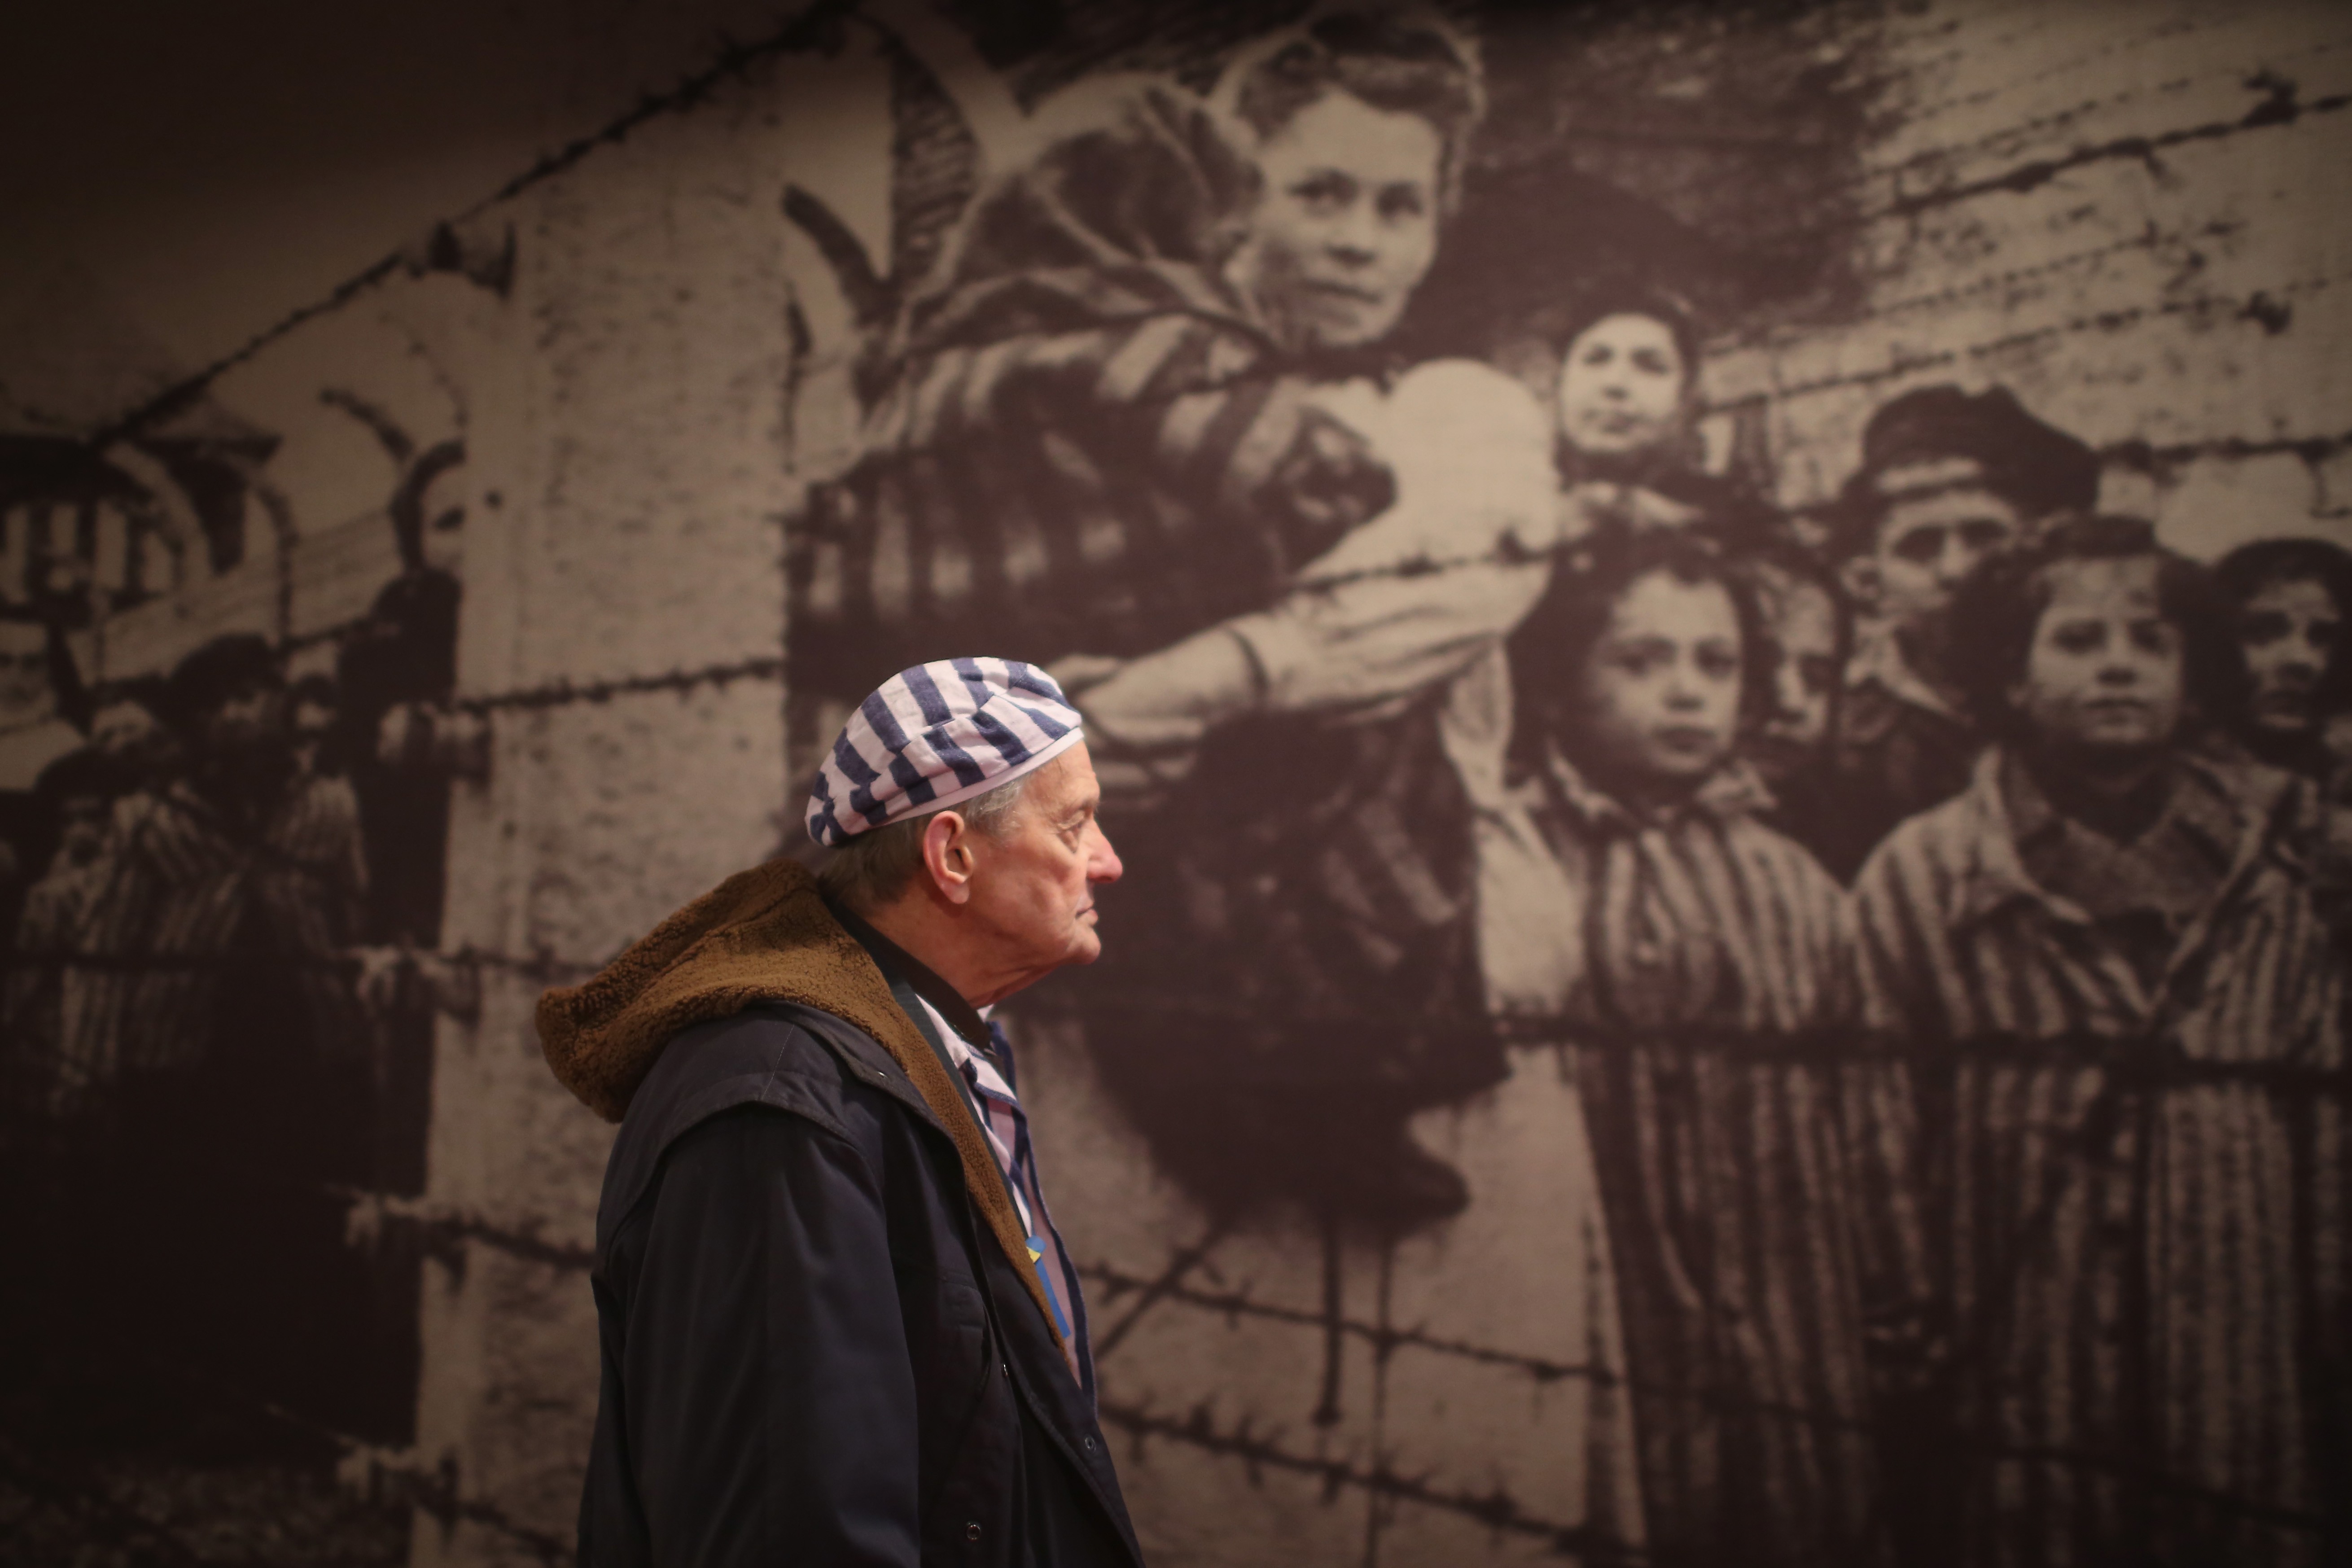  Igor Malicky, sobrevivente do holocausto, de 90 anos, observa as imagens da exposição de Auschwitz (Foto: getty)